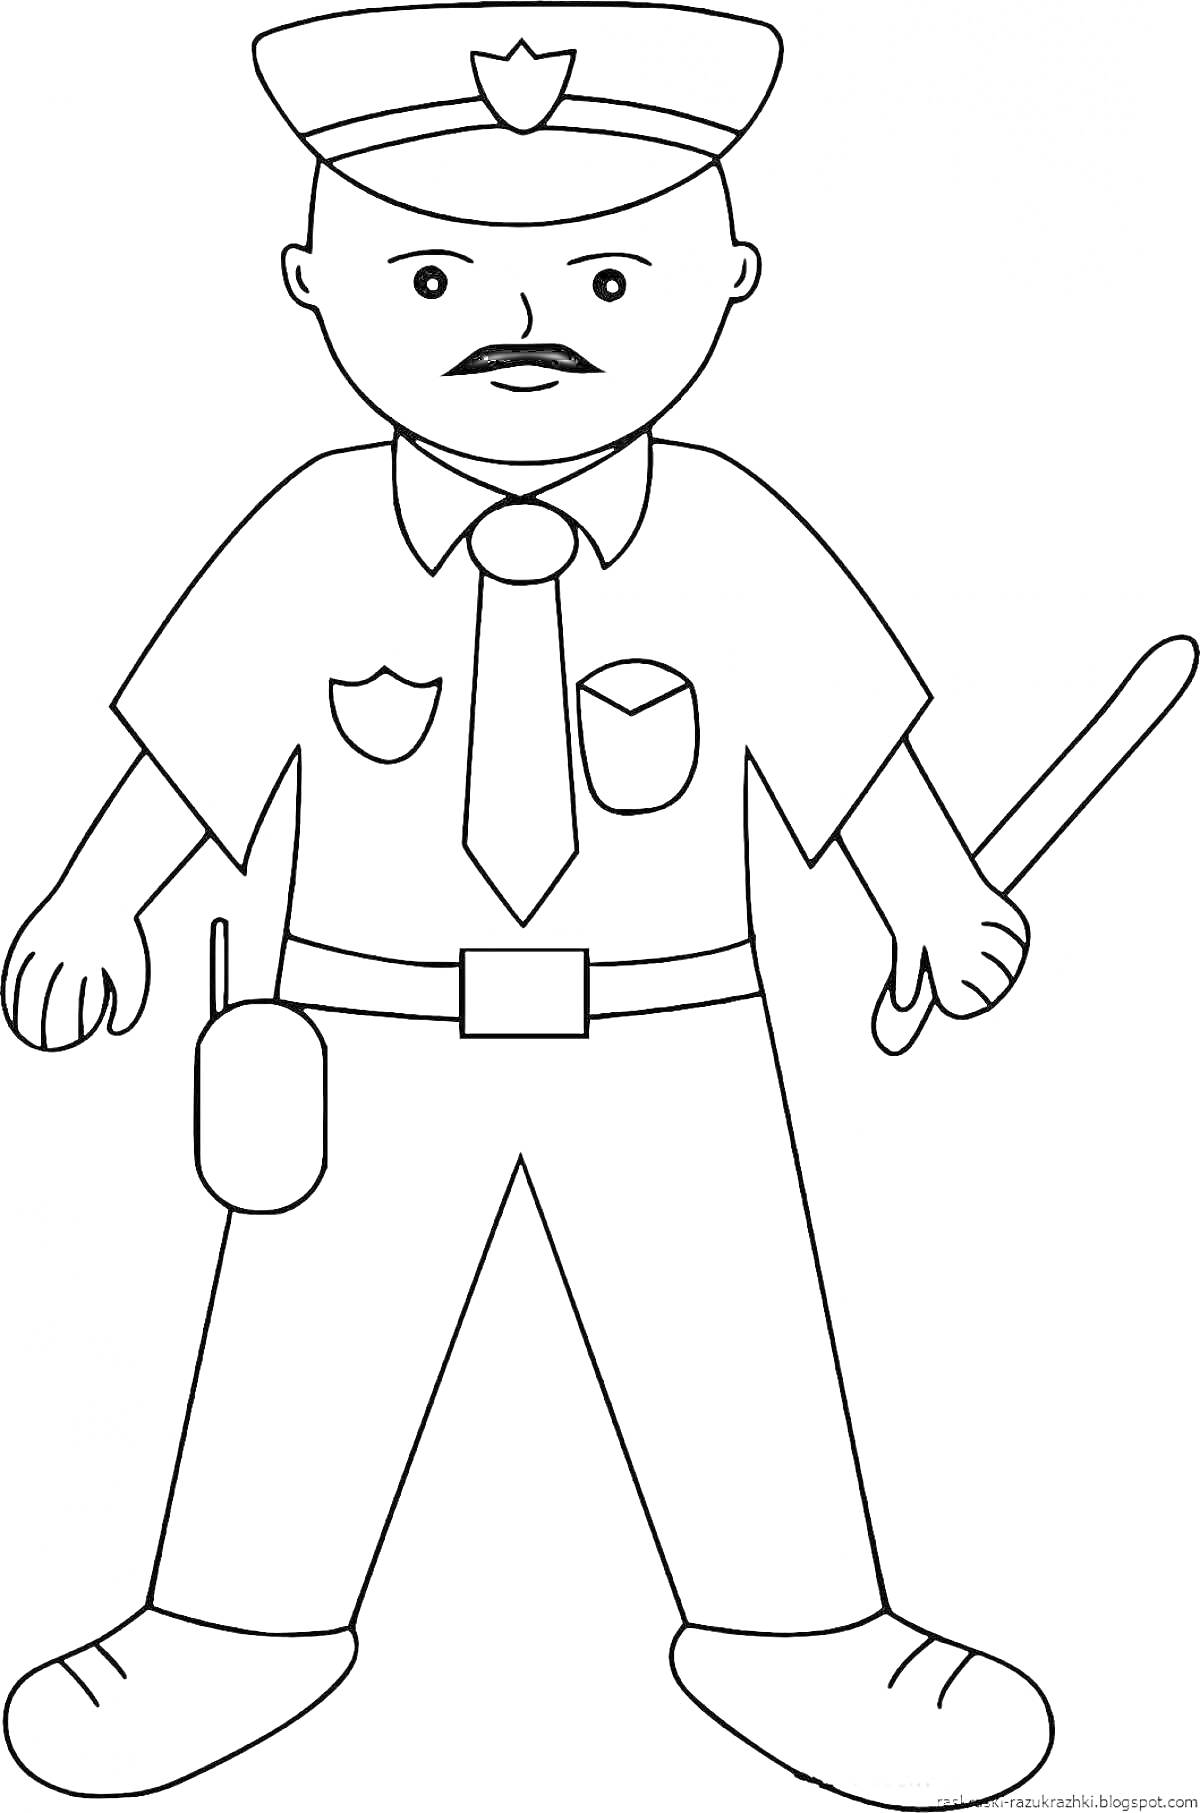 Раскраска Полицейский с дубинкой и рацией